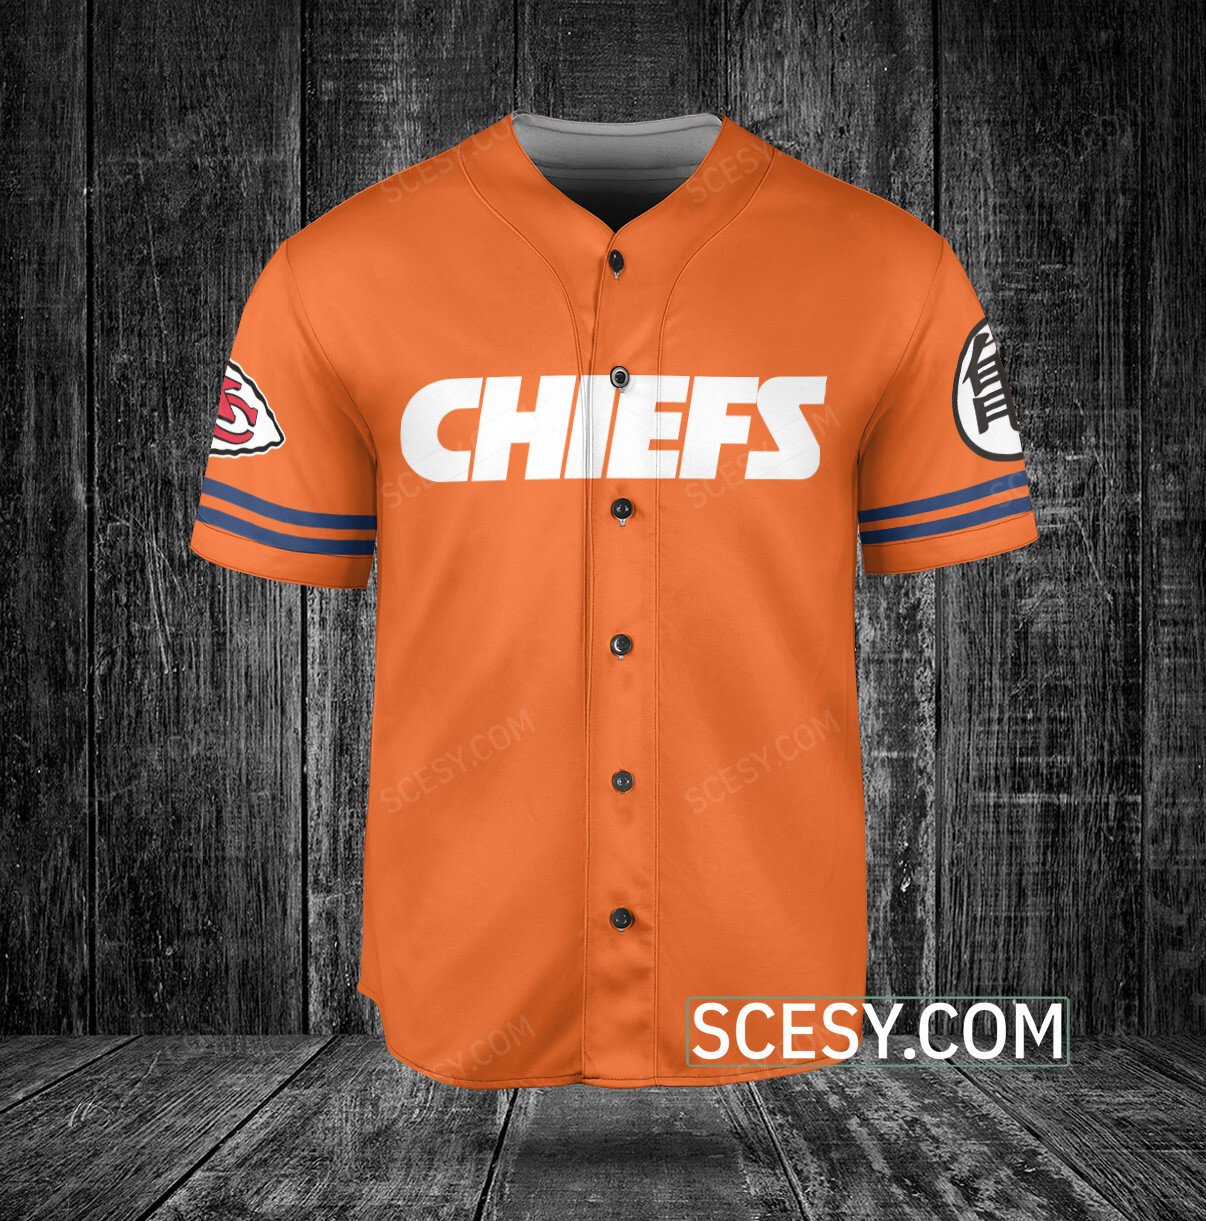 Kansas City Chiefs Personalized Baseball Jersey BG201 